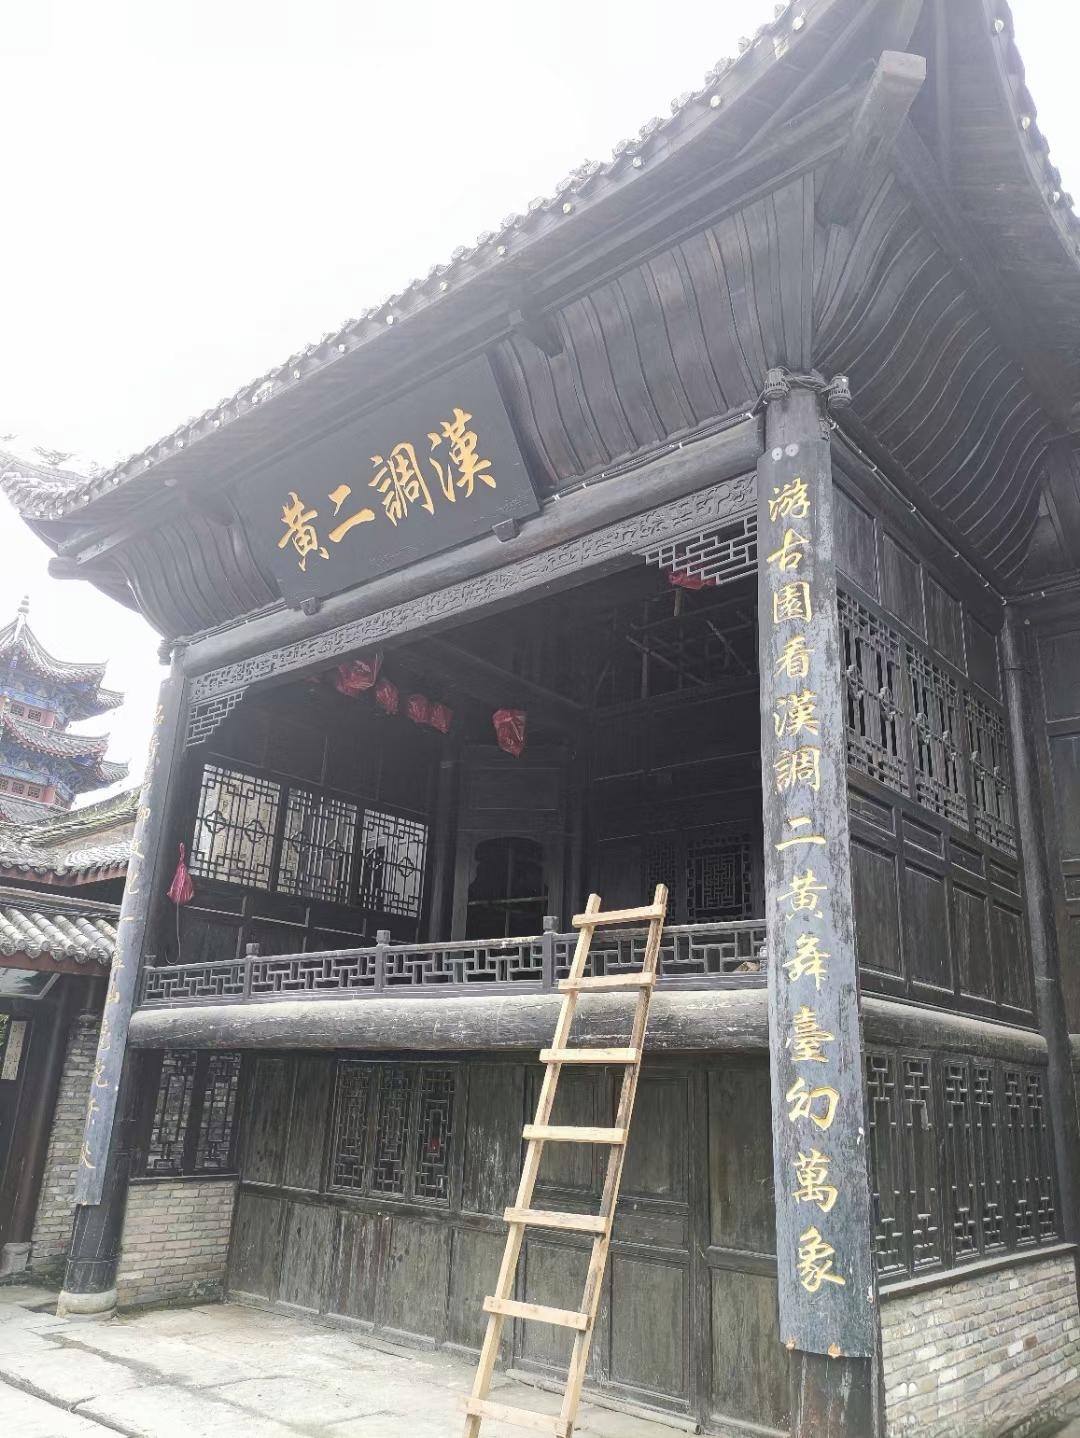 石泉老街位于陕西省石泉县城南部，全长1千米，历史上曾经是商贾云集、繁荣富裕的商贸一条街。随着县城规模